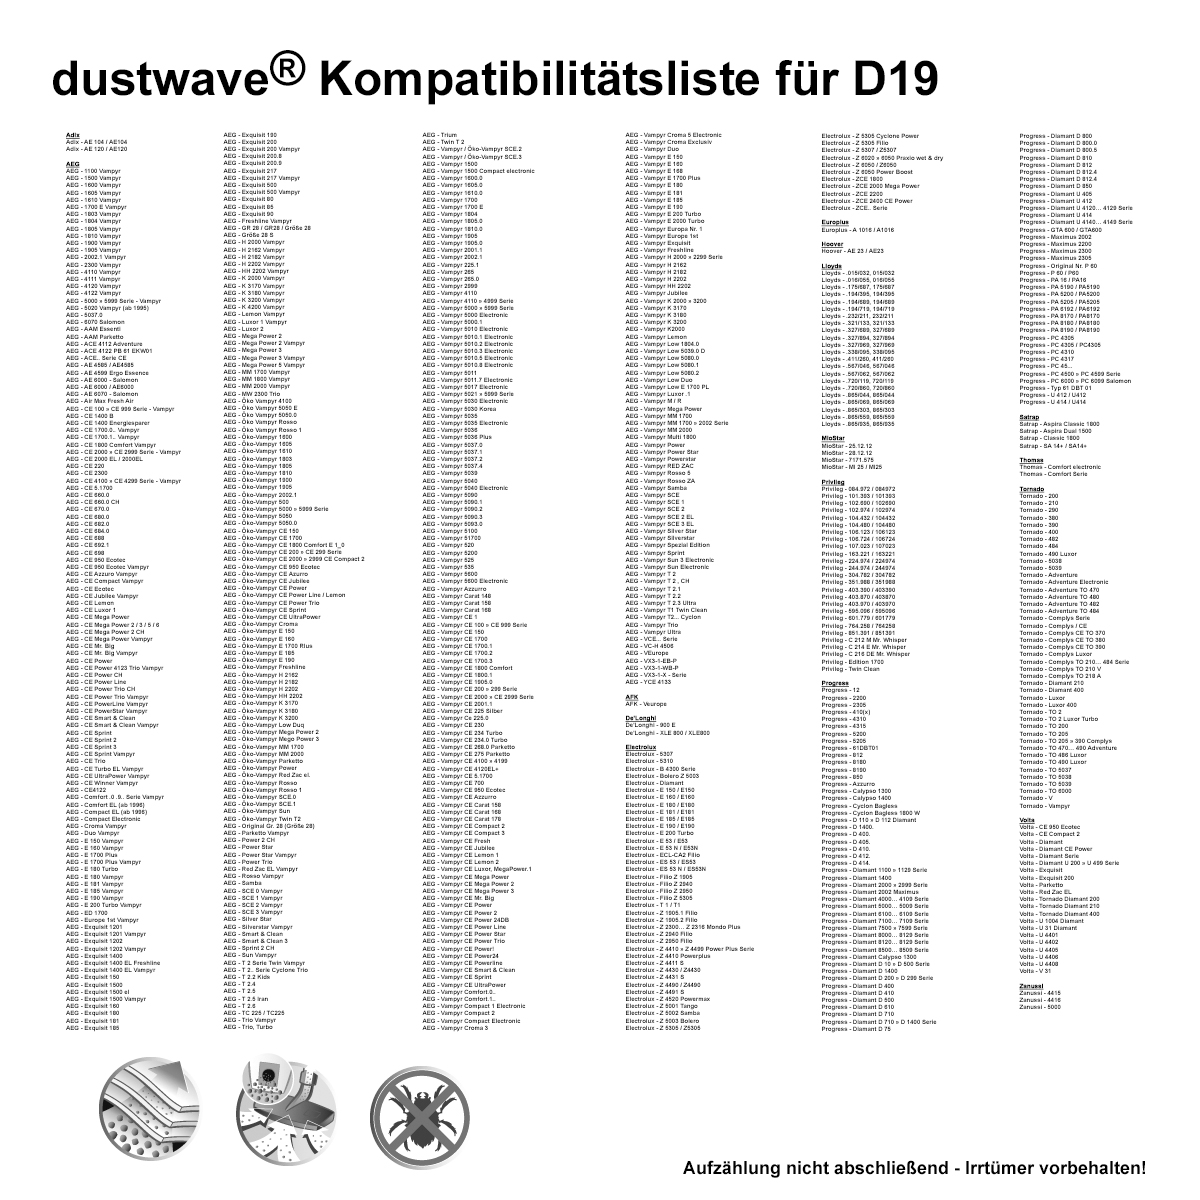 Dustwave® 10 Staubsaugerbeutel für AEG Vampyr CE 230 - hocheffizient, mehrlagiges Mikrovlies mit Hygieneverschluss - Made in Germany